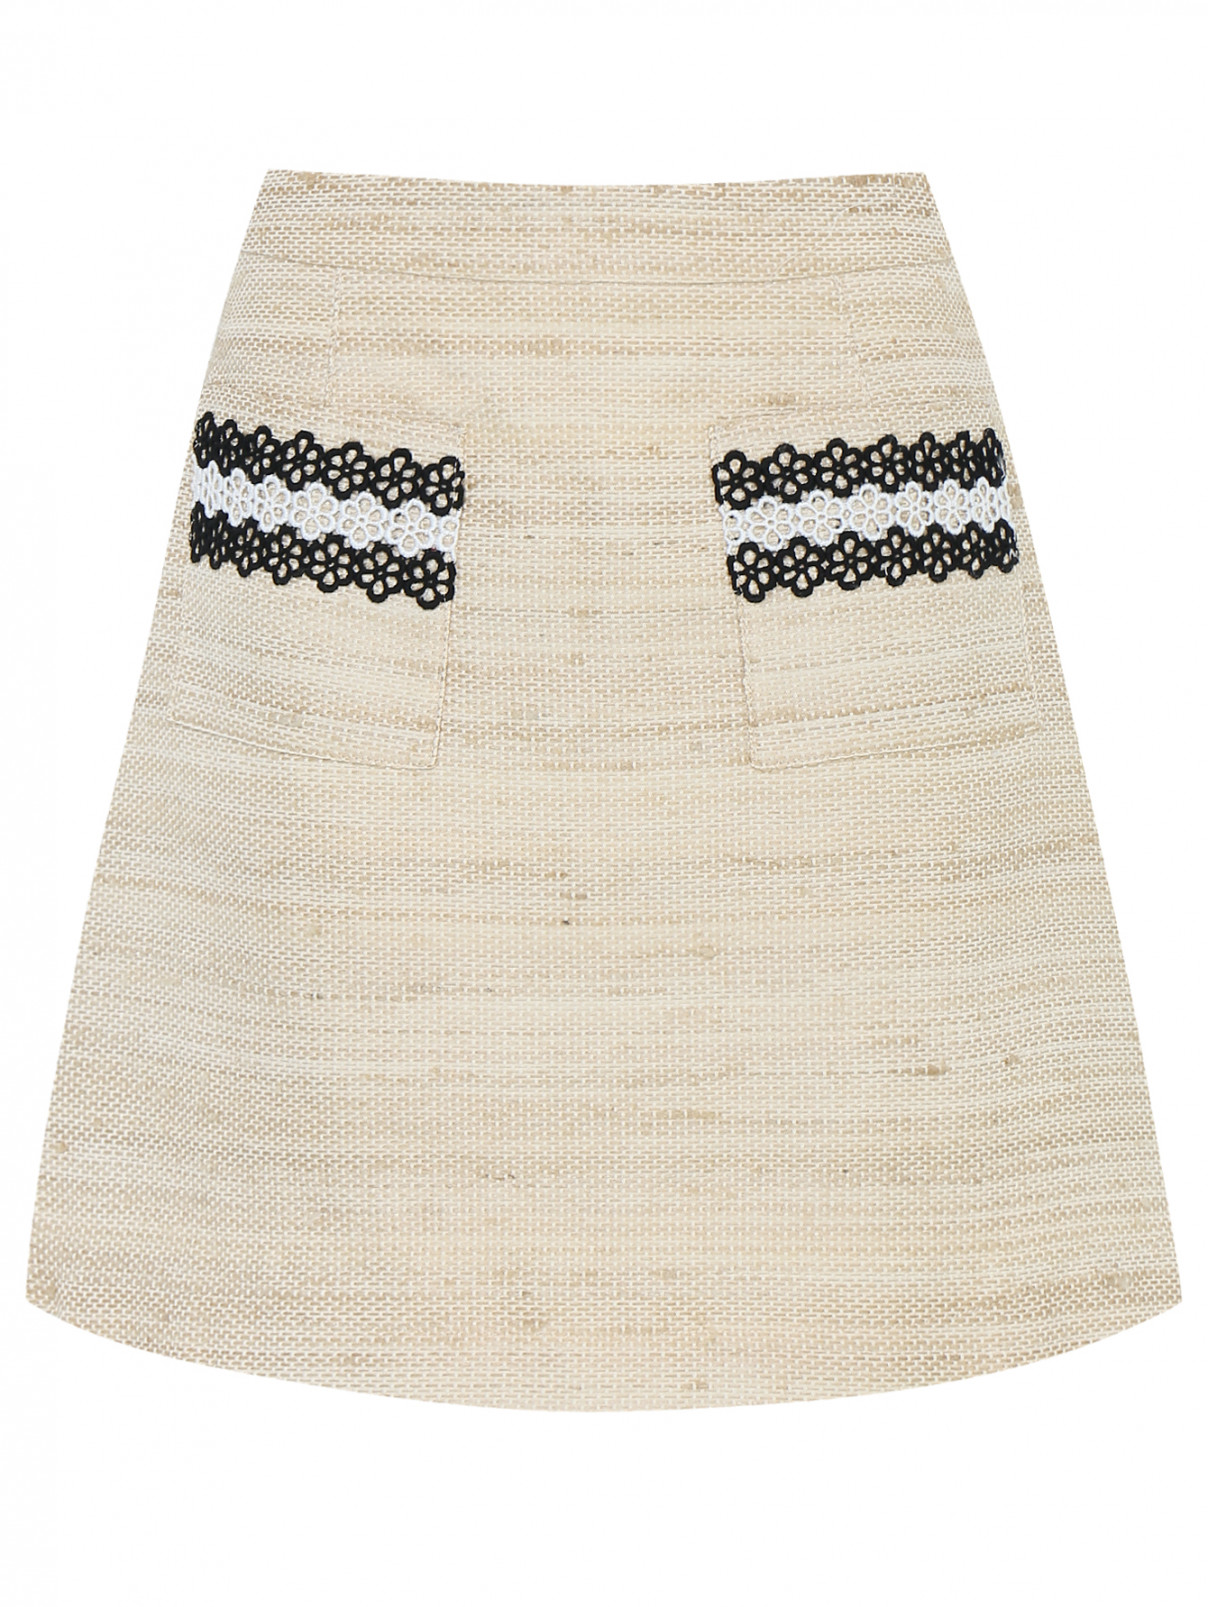 Мини-юбка из фактурной ткани MiMiSol  –  Общий вид  – Цвет:  Бежевый